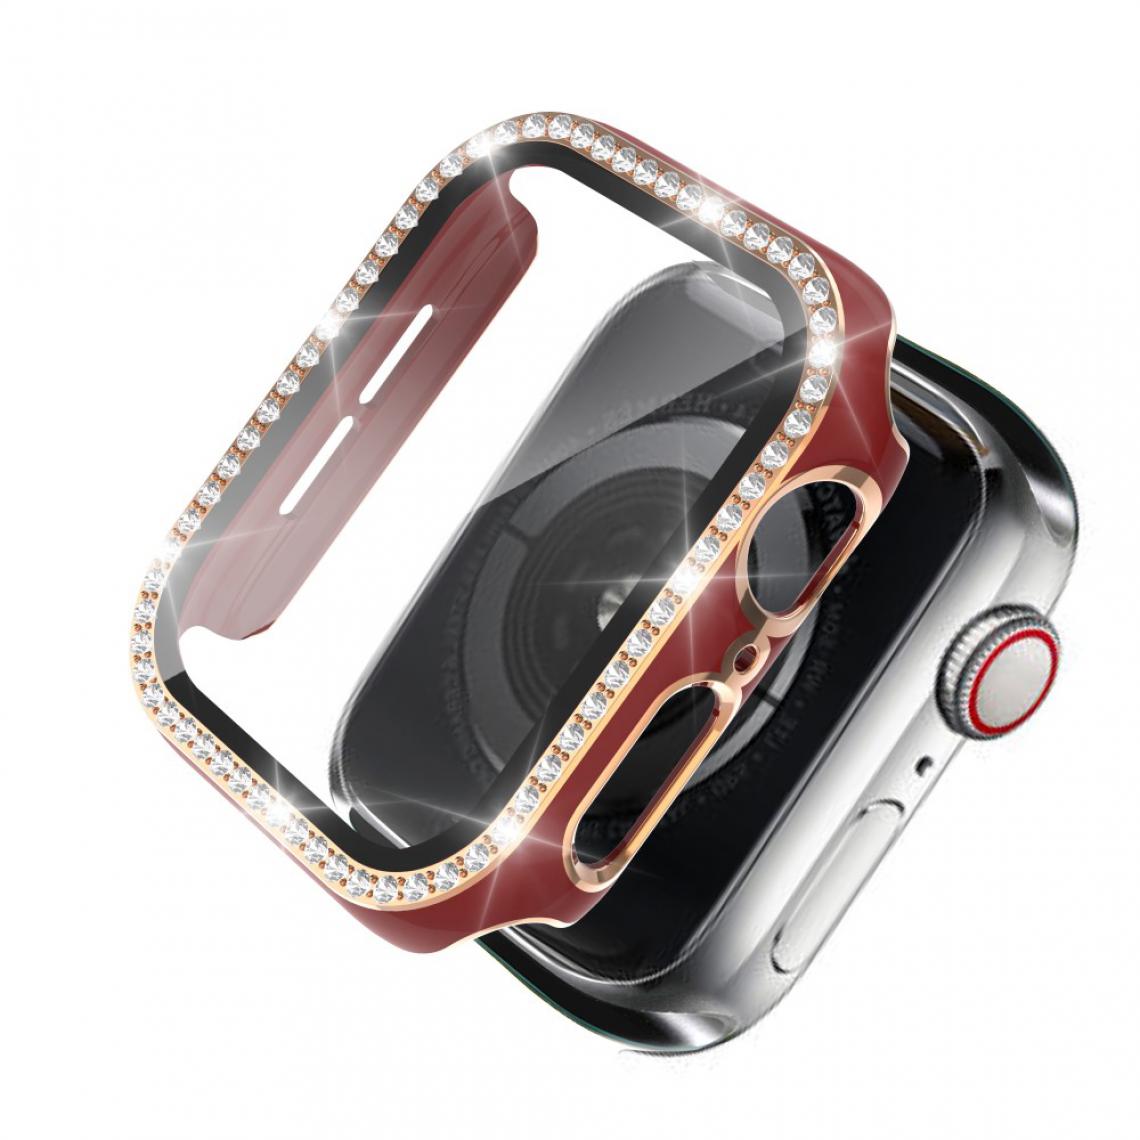 Other - Coque en TPU Strass en cristal de galvanoplastie bicolore Or rouge pour votre Apple Watch 1/2/3 42mm - Accessoires bracelet connecté